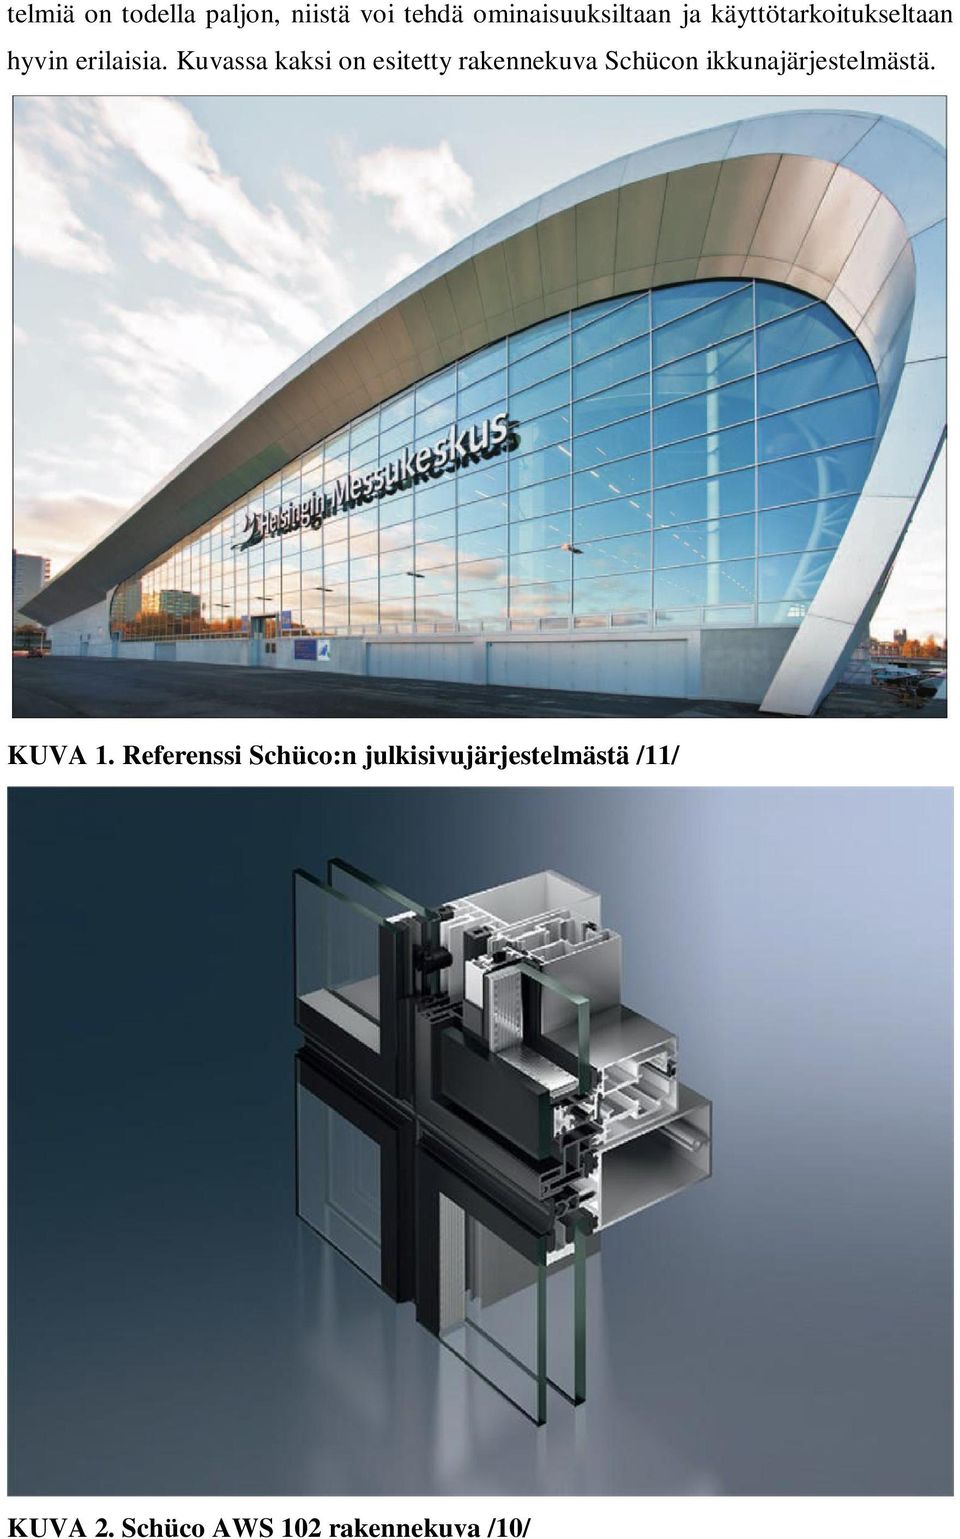 Kuvassa kaksi on esitetty rakennekuva Schücon ikkunajärjestelmästä.